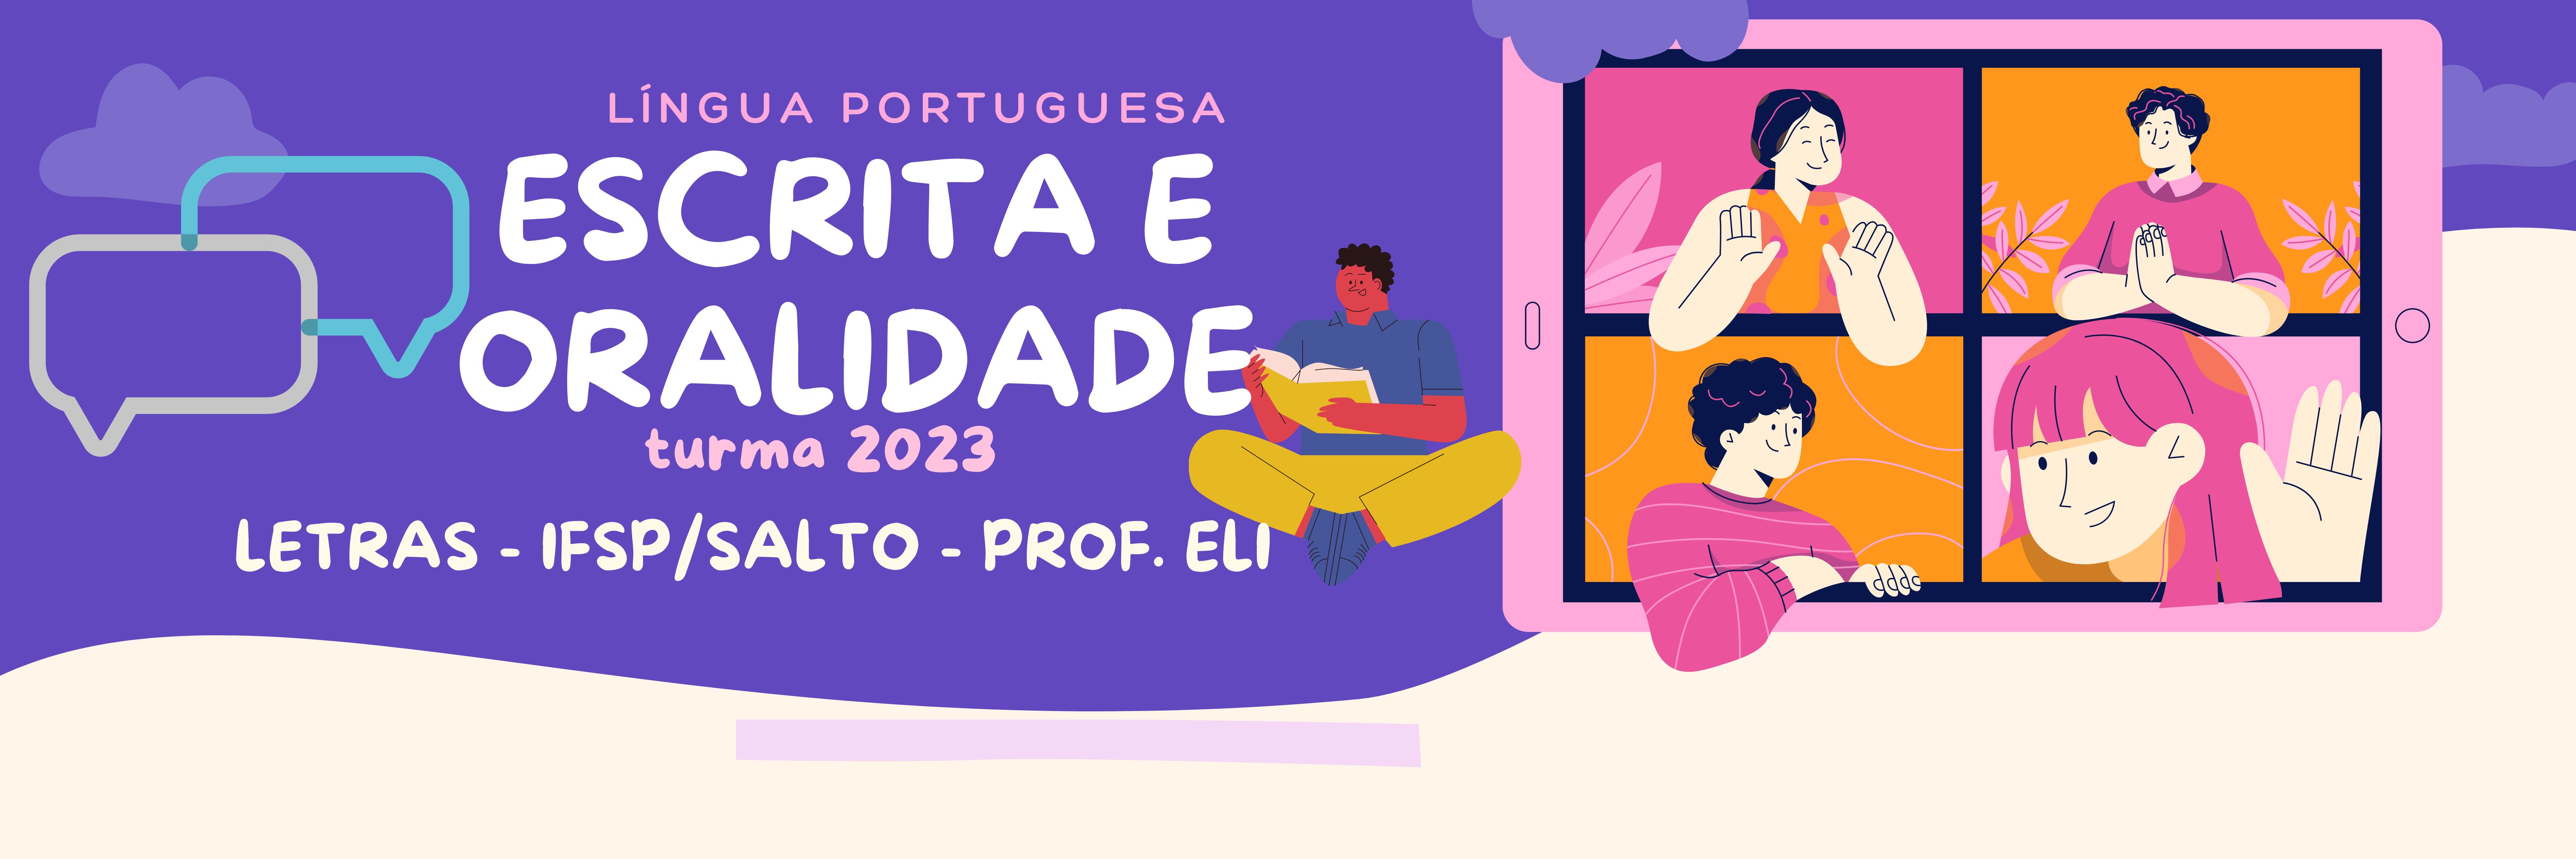 Língua Portuguesa: Escrita e Oralidade (2_2023)